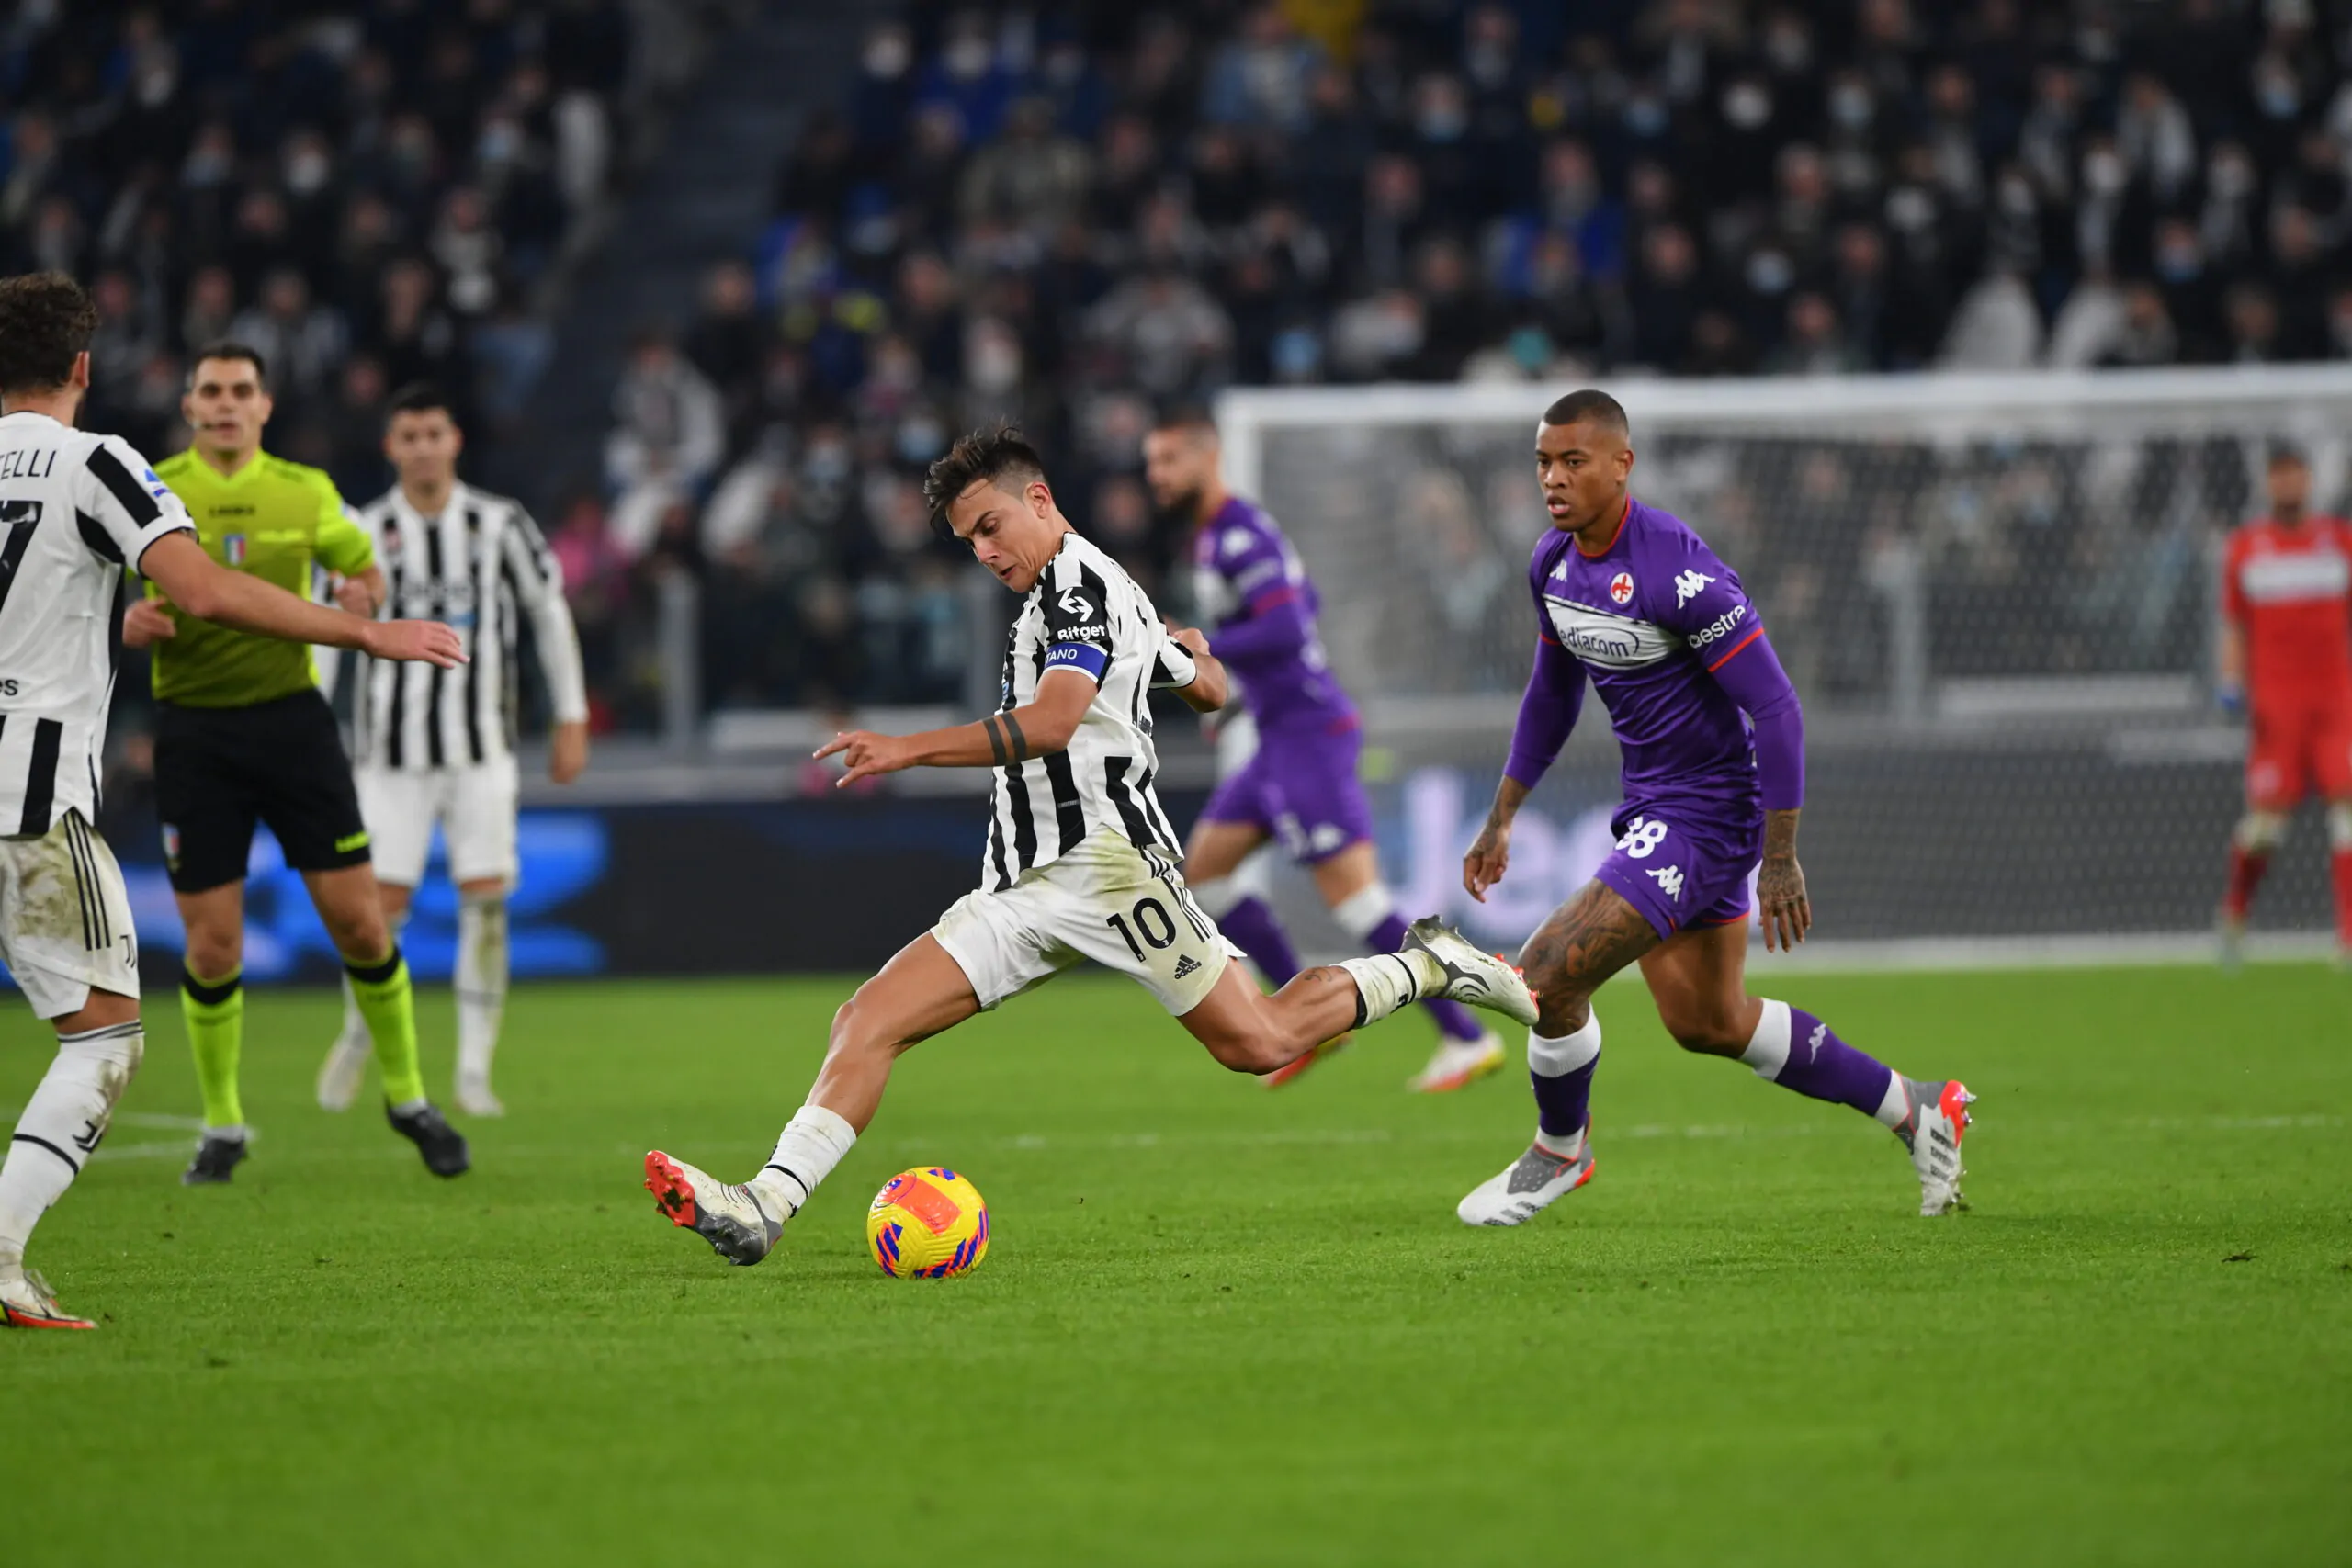 Pradè polemico dopo Juve-Fiorentina: “È stato picchiato dall’inizio alla fine”